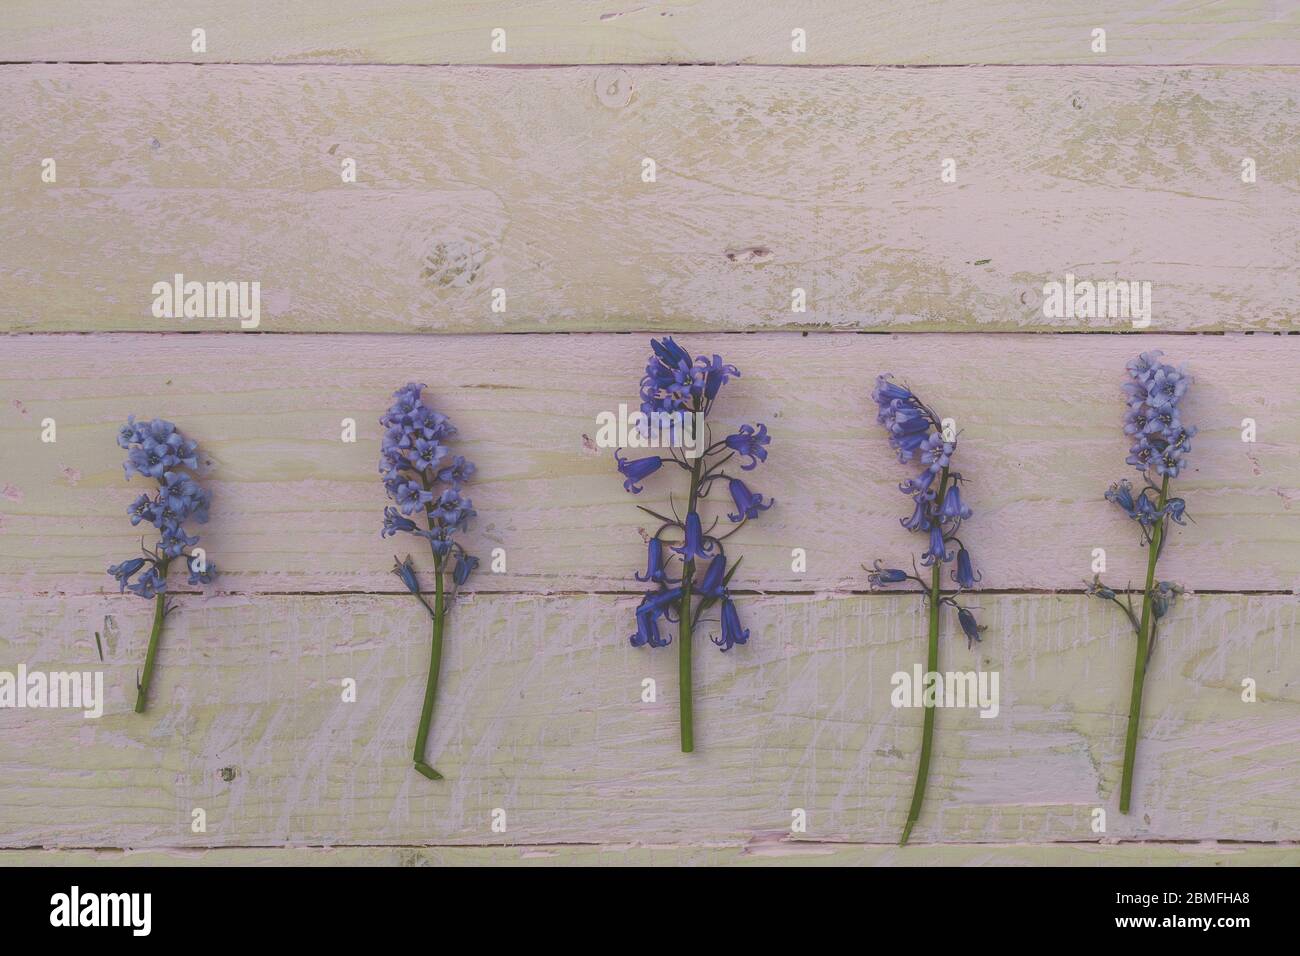 Foto plana de laico con cinco flores azules de campana alineadas en una fila Foto de stock